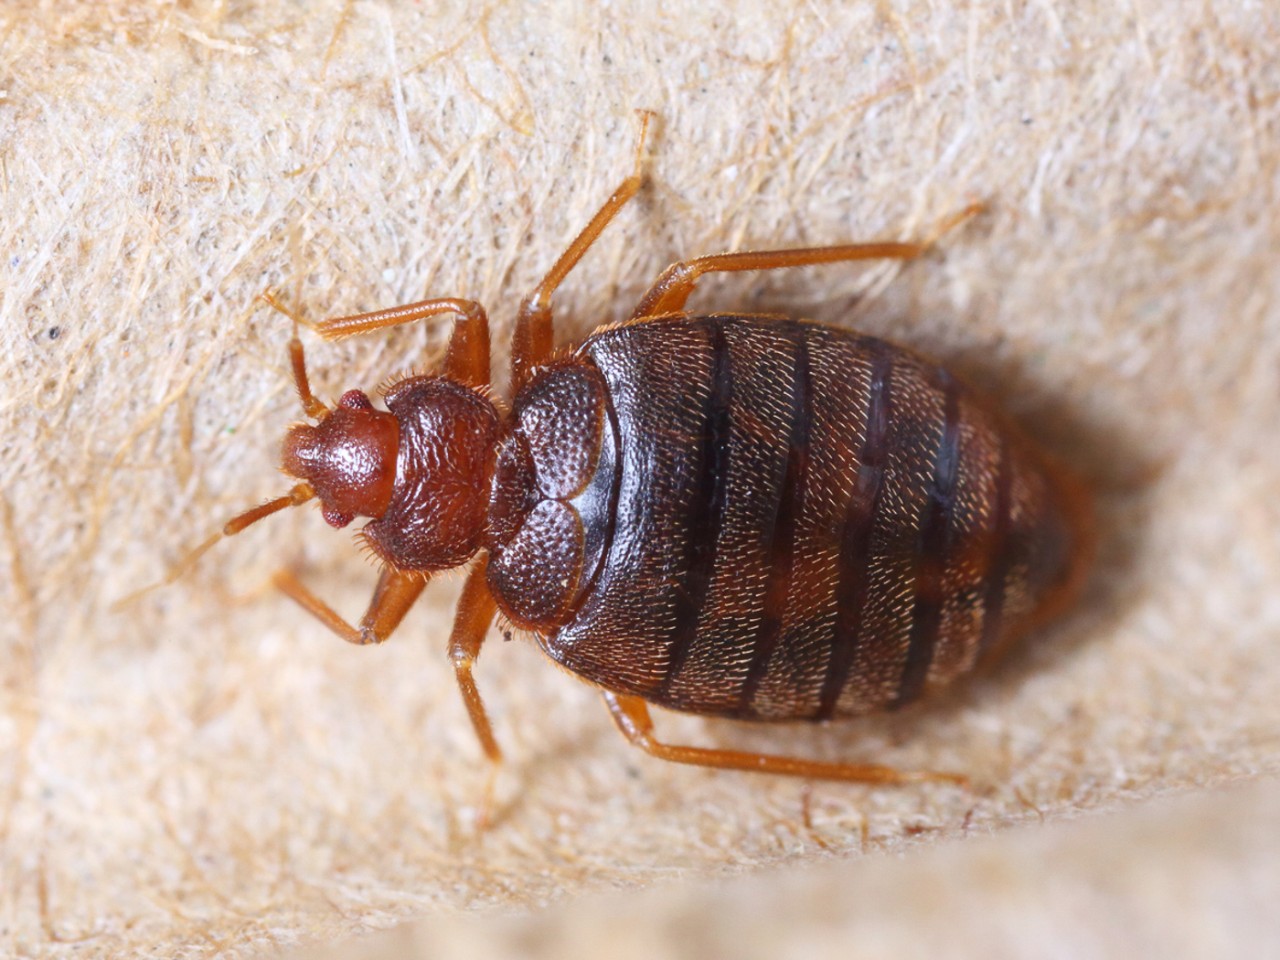 A bedbug.